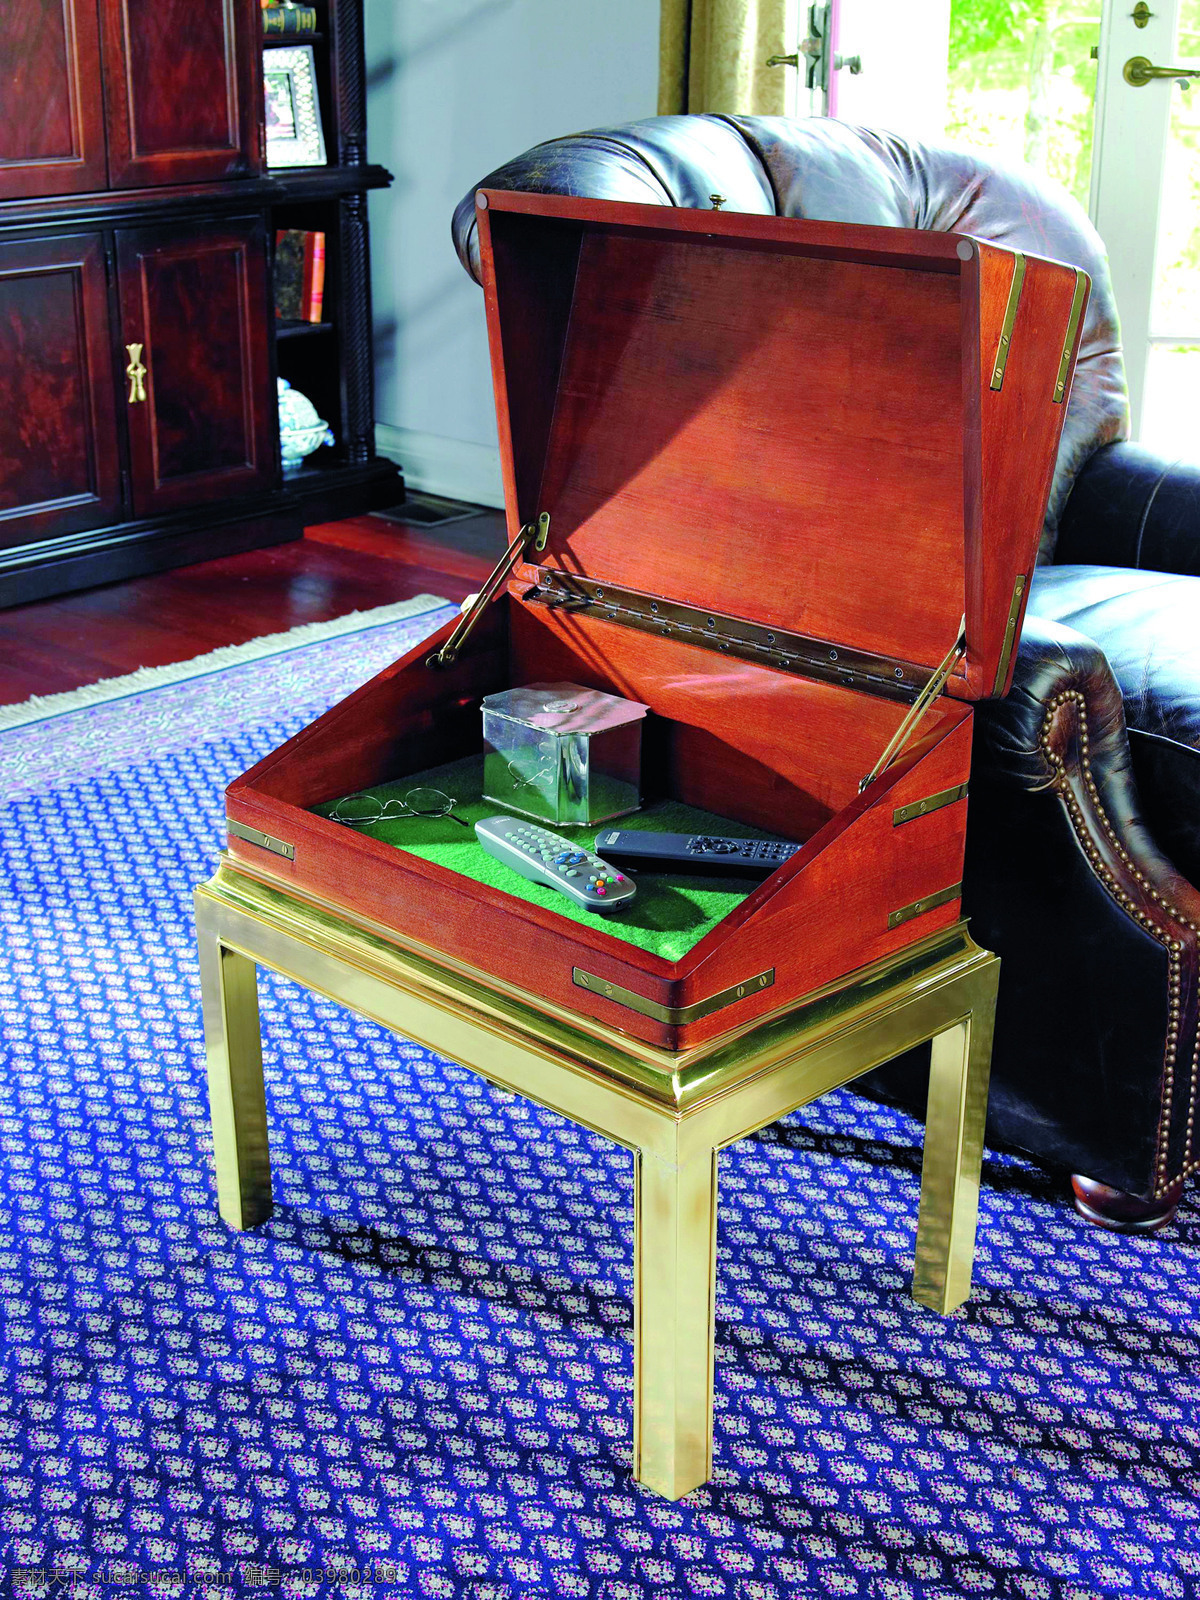 客厅 里 红木 箱子 地毯 盒子 家具 沙发 眼镜 遥控器 铁皮箱